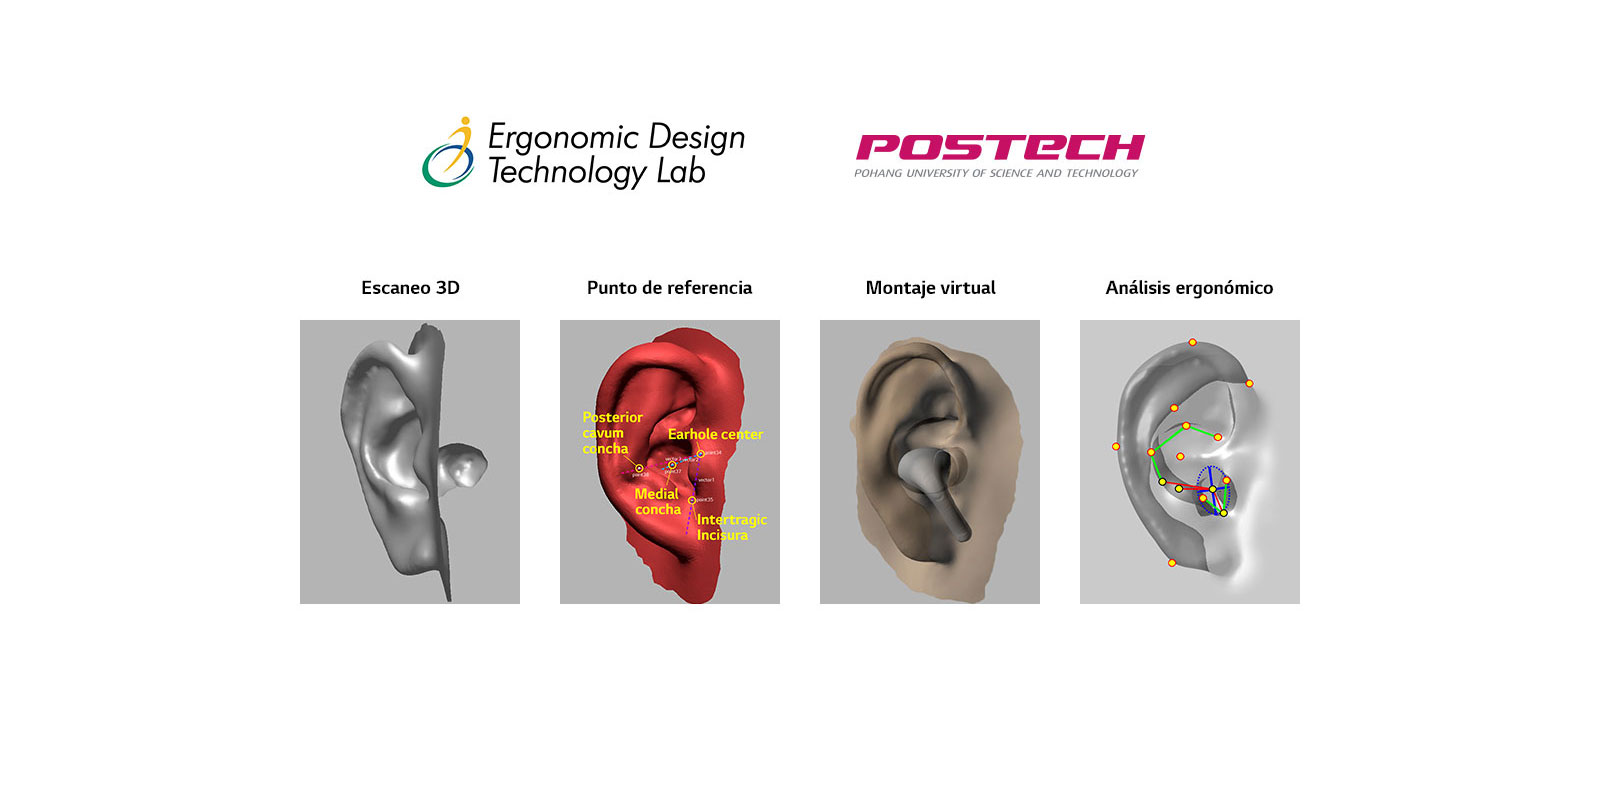 Una imagen en la que se revela la imagen de modelado de orejas en forma 3D en un total de 4 etapas.